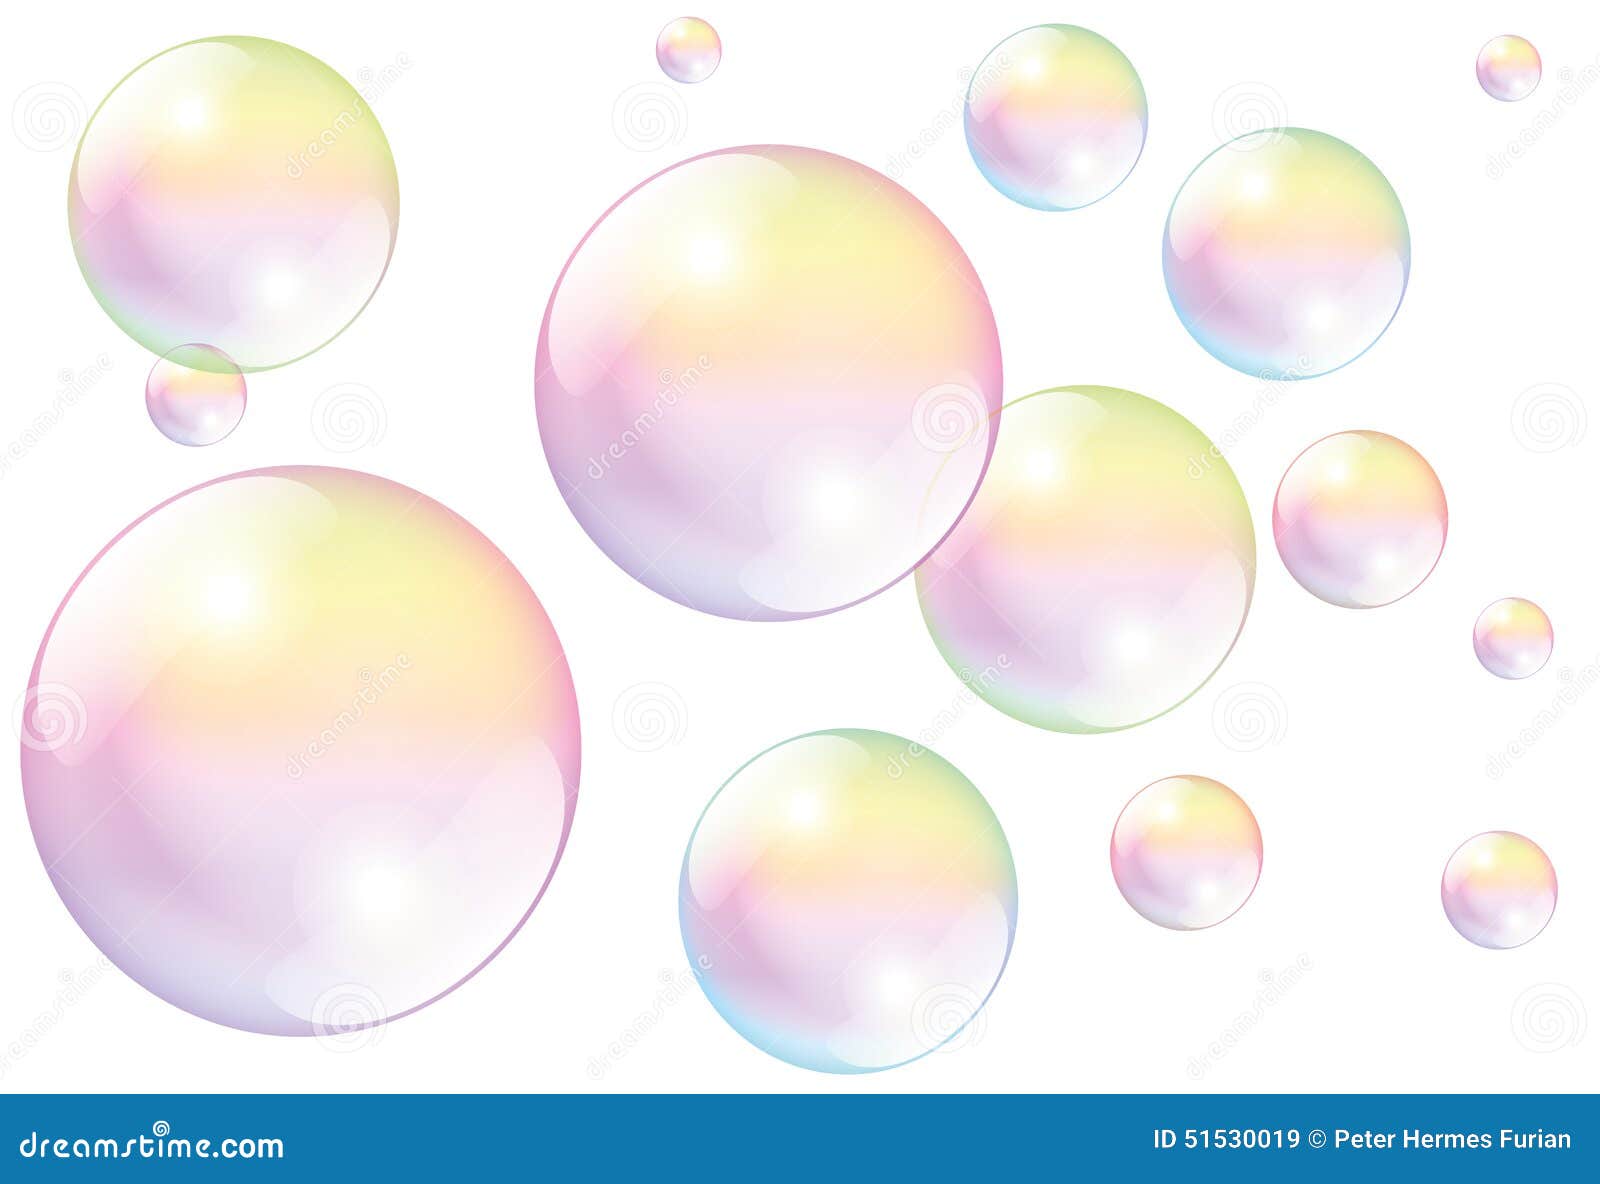 soap bubbles white